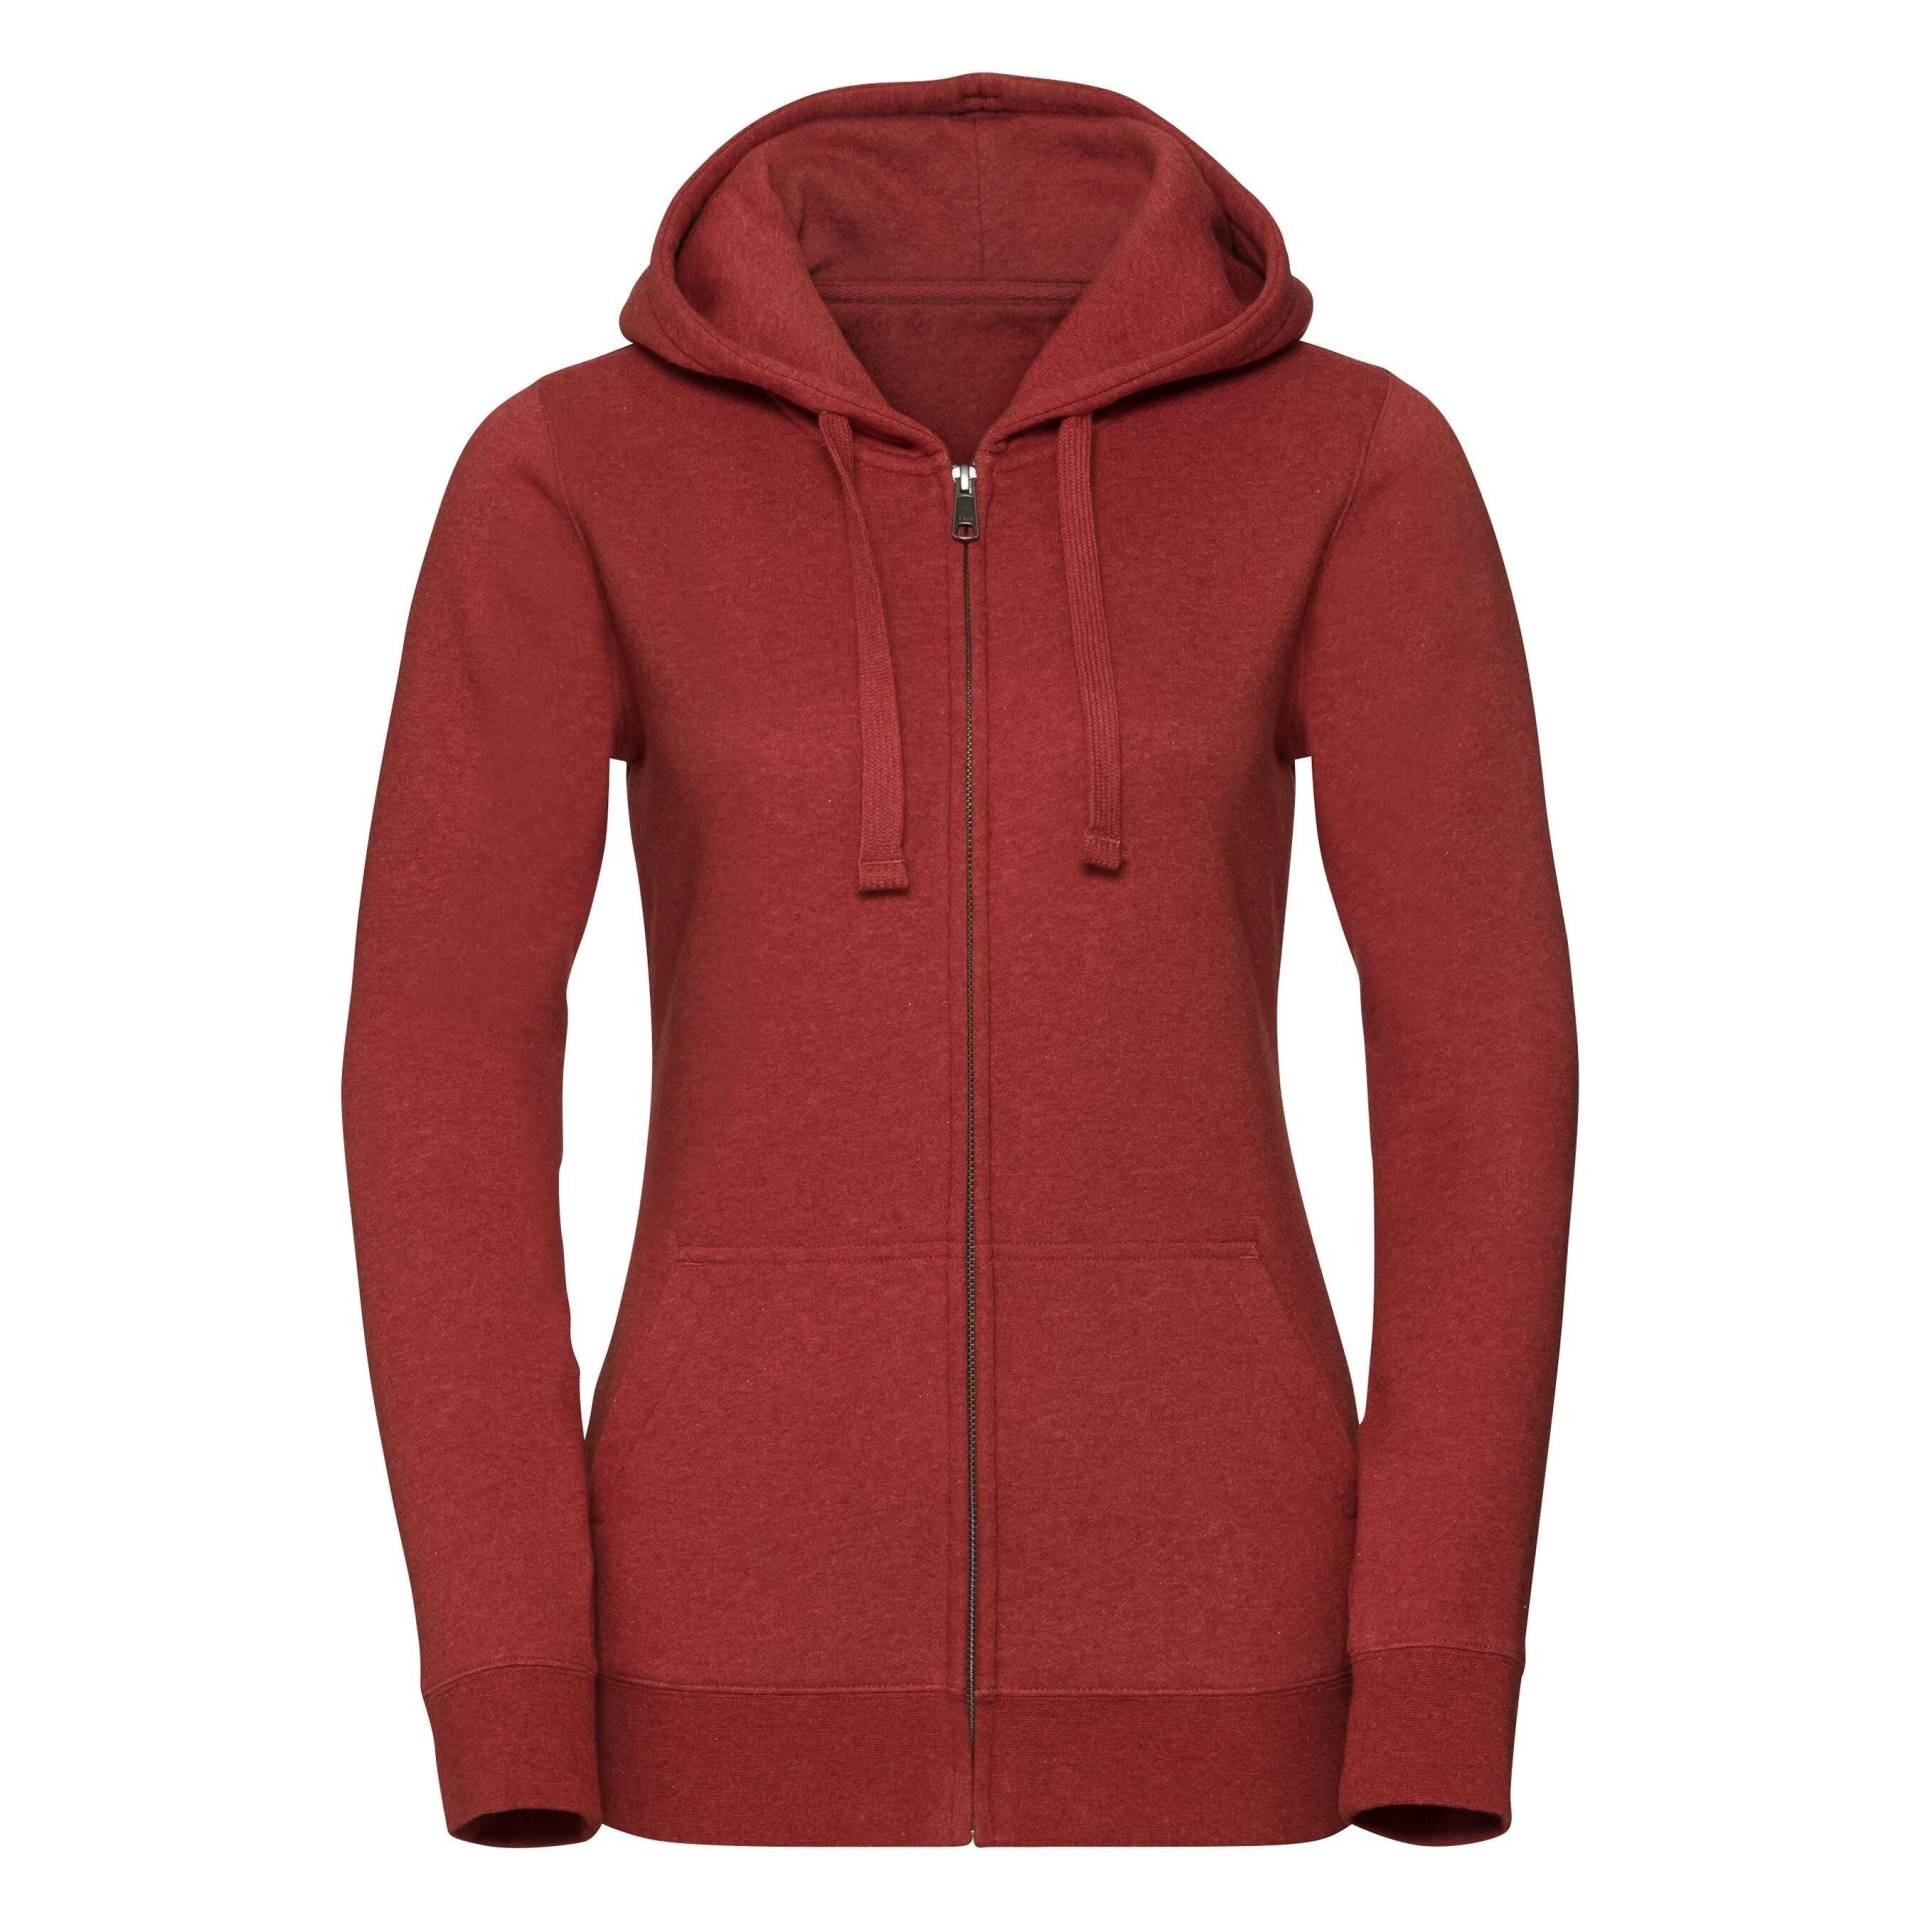 Authentic Sweatshirt Mit Reißverschluss Damen Rot Bunt 34 von Russell